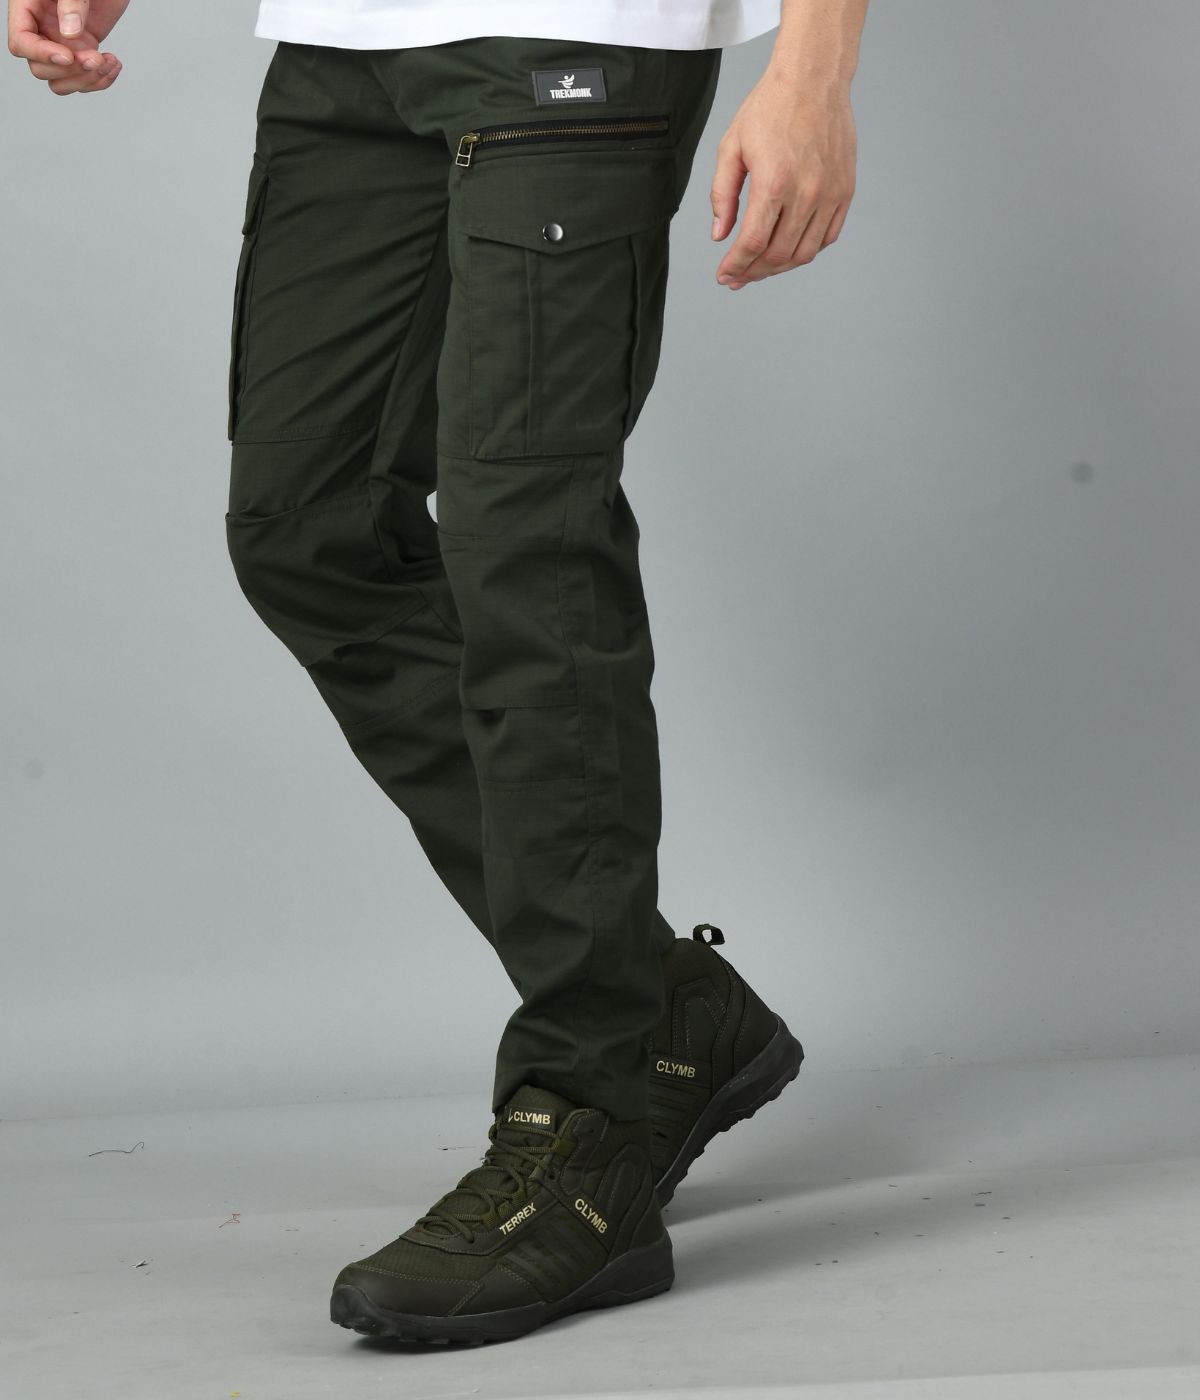 Men's 7-pocket Outdoor Cargo Pants